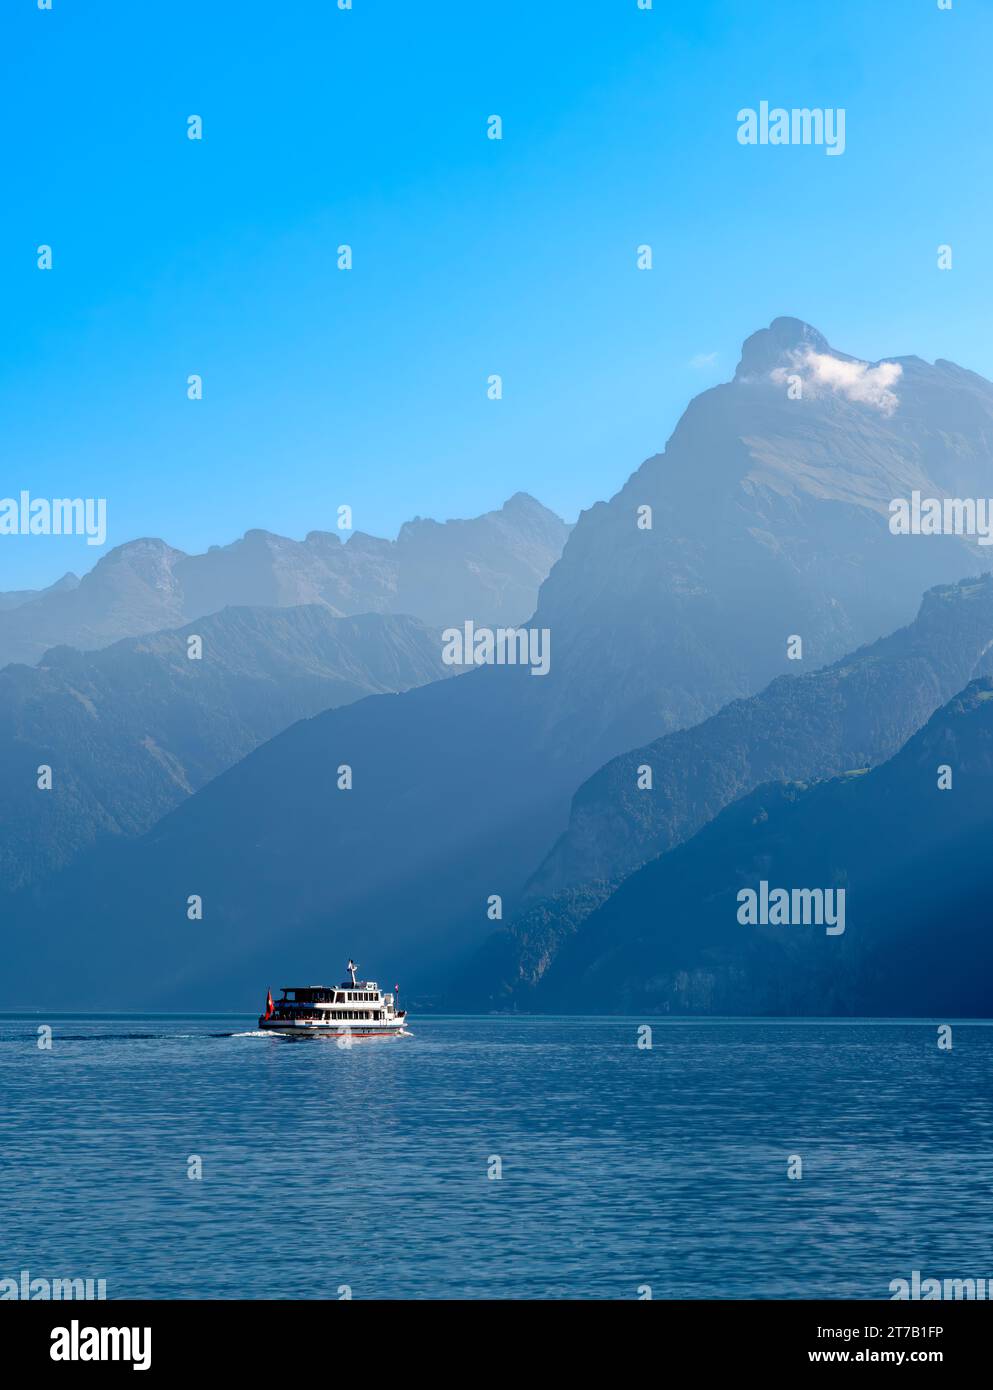 Umrisse der Berge am schweizerischen Urnersee - Luzerne See - im tagsüber trüben Licht. Touristenschiff auf dem See. Stockfoto